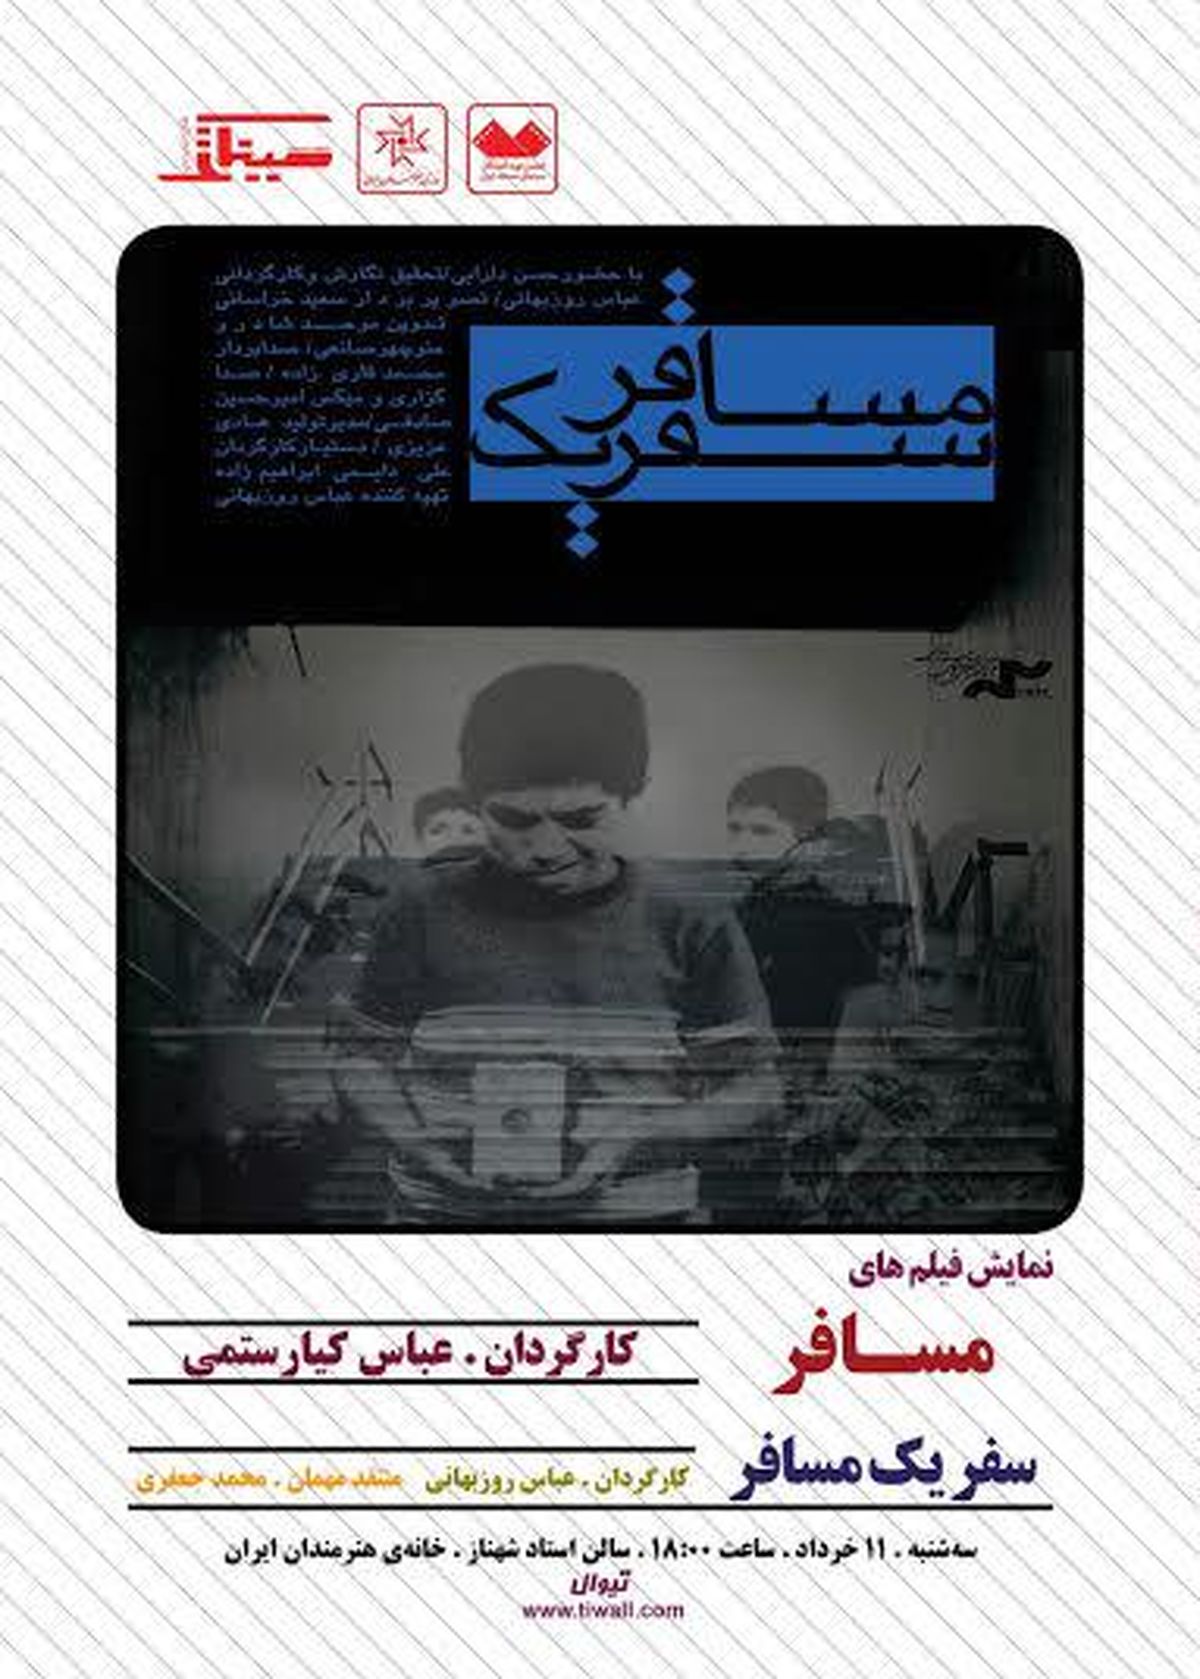 نمایش مستند "مسافر" از عباس کیارستمی در خانه هنرمندان ایران